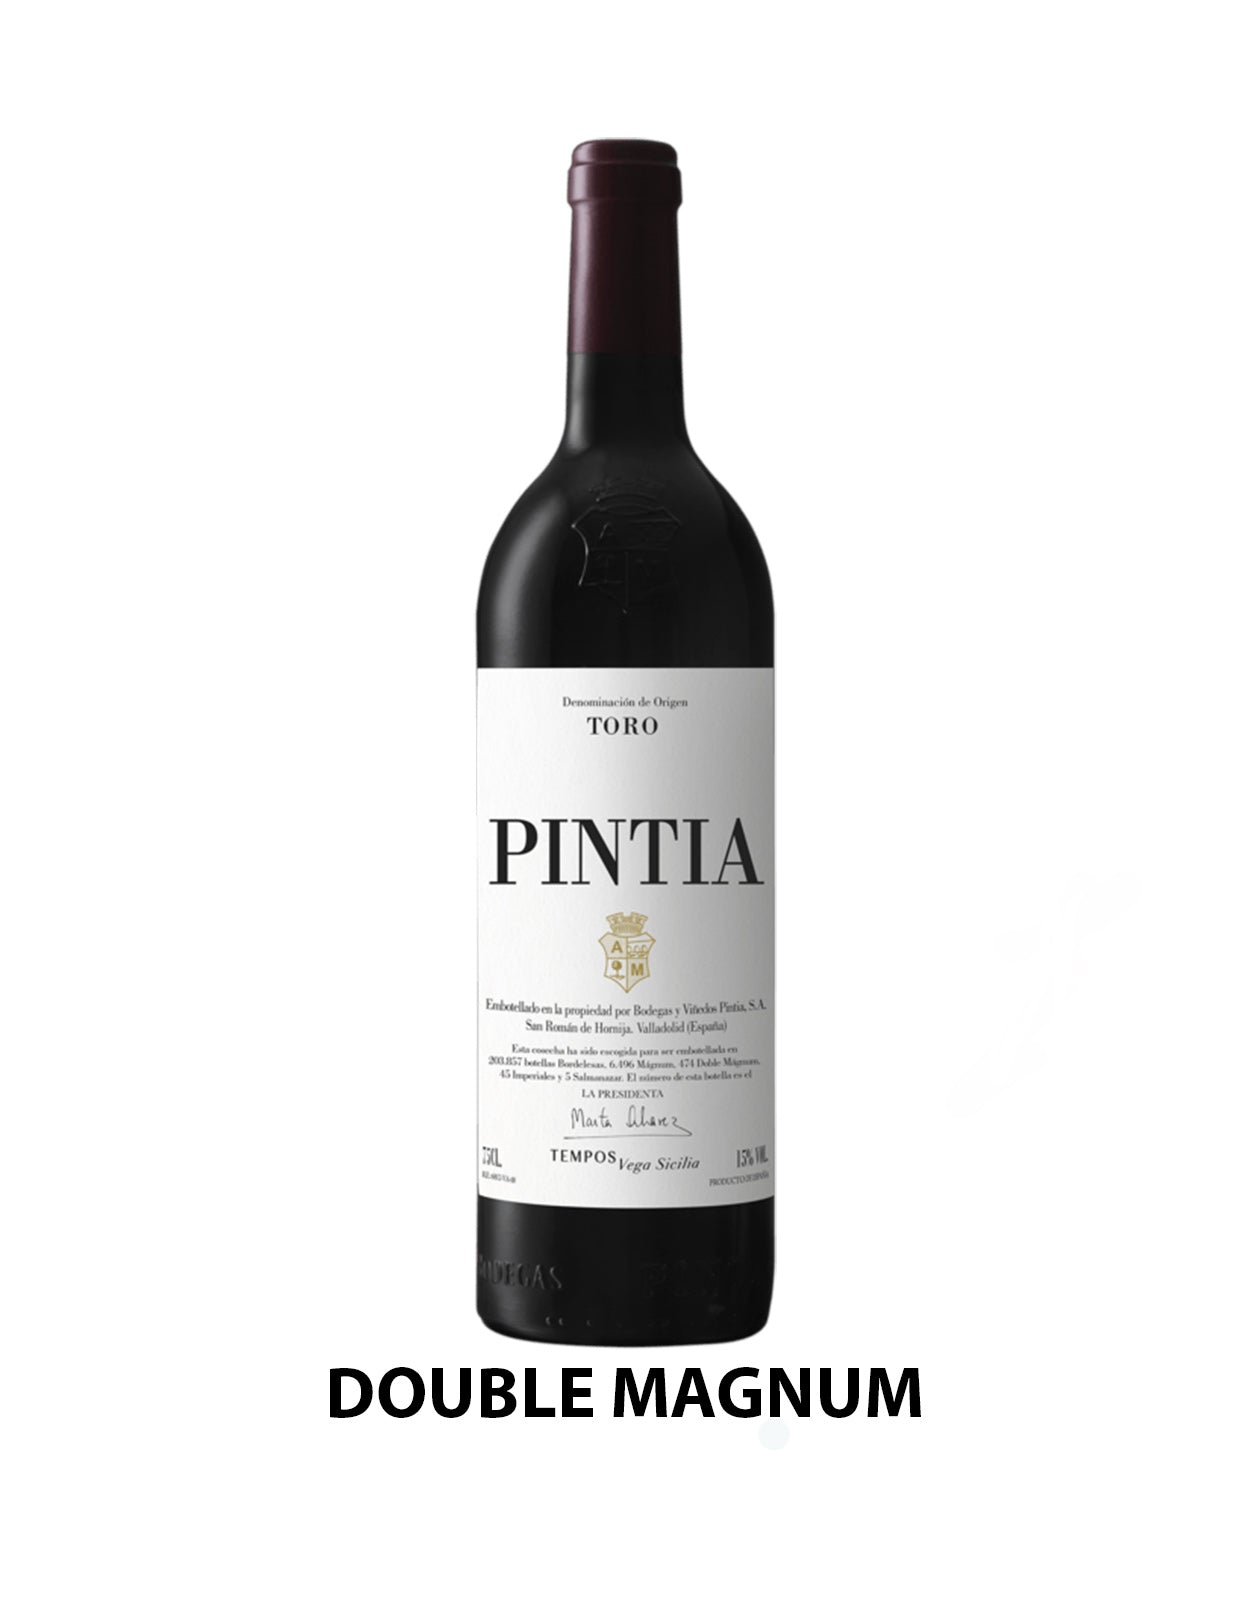 Vega Sicilia Pintia 2018 - 3 Litre Bottle